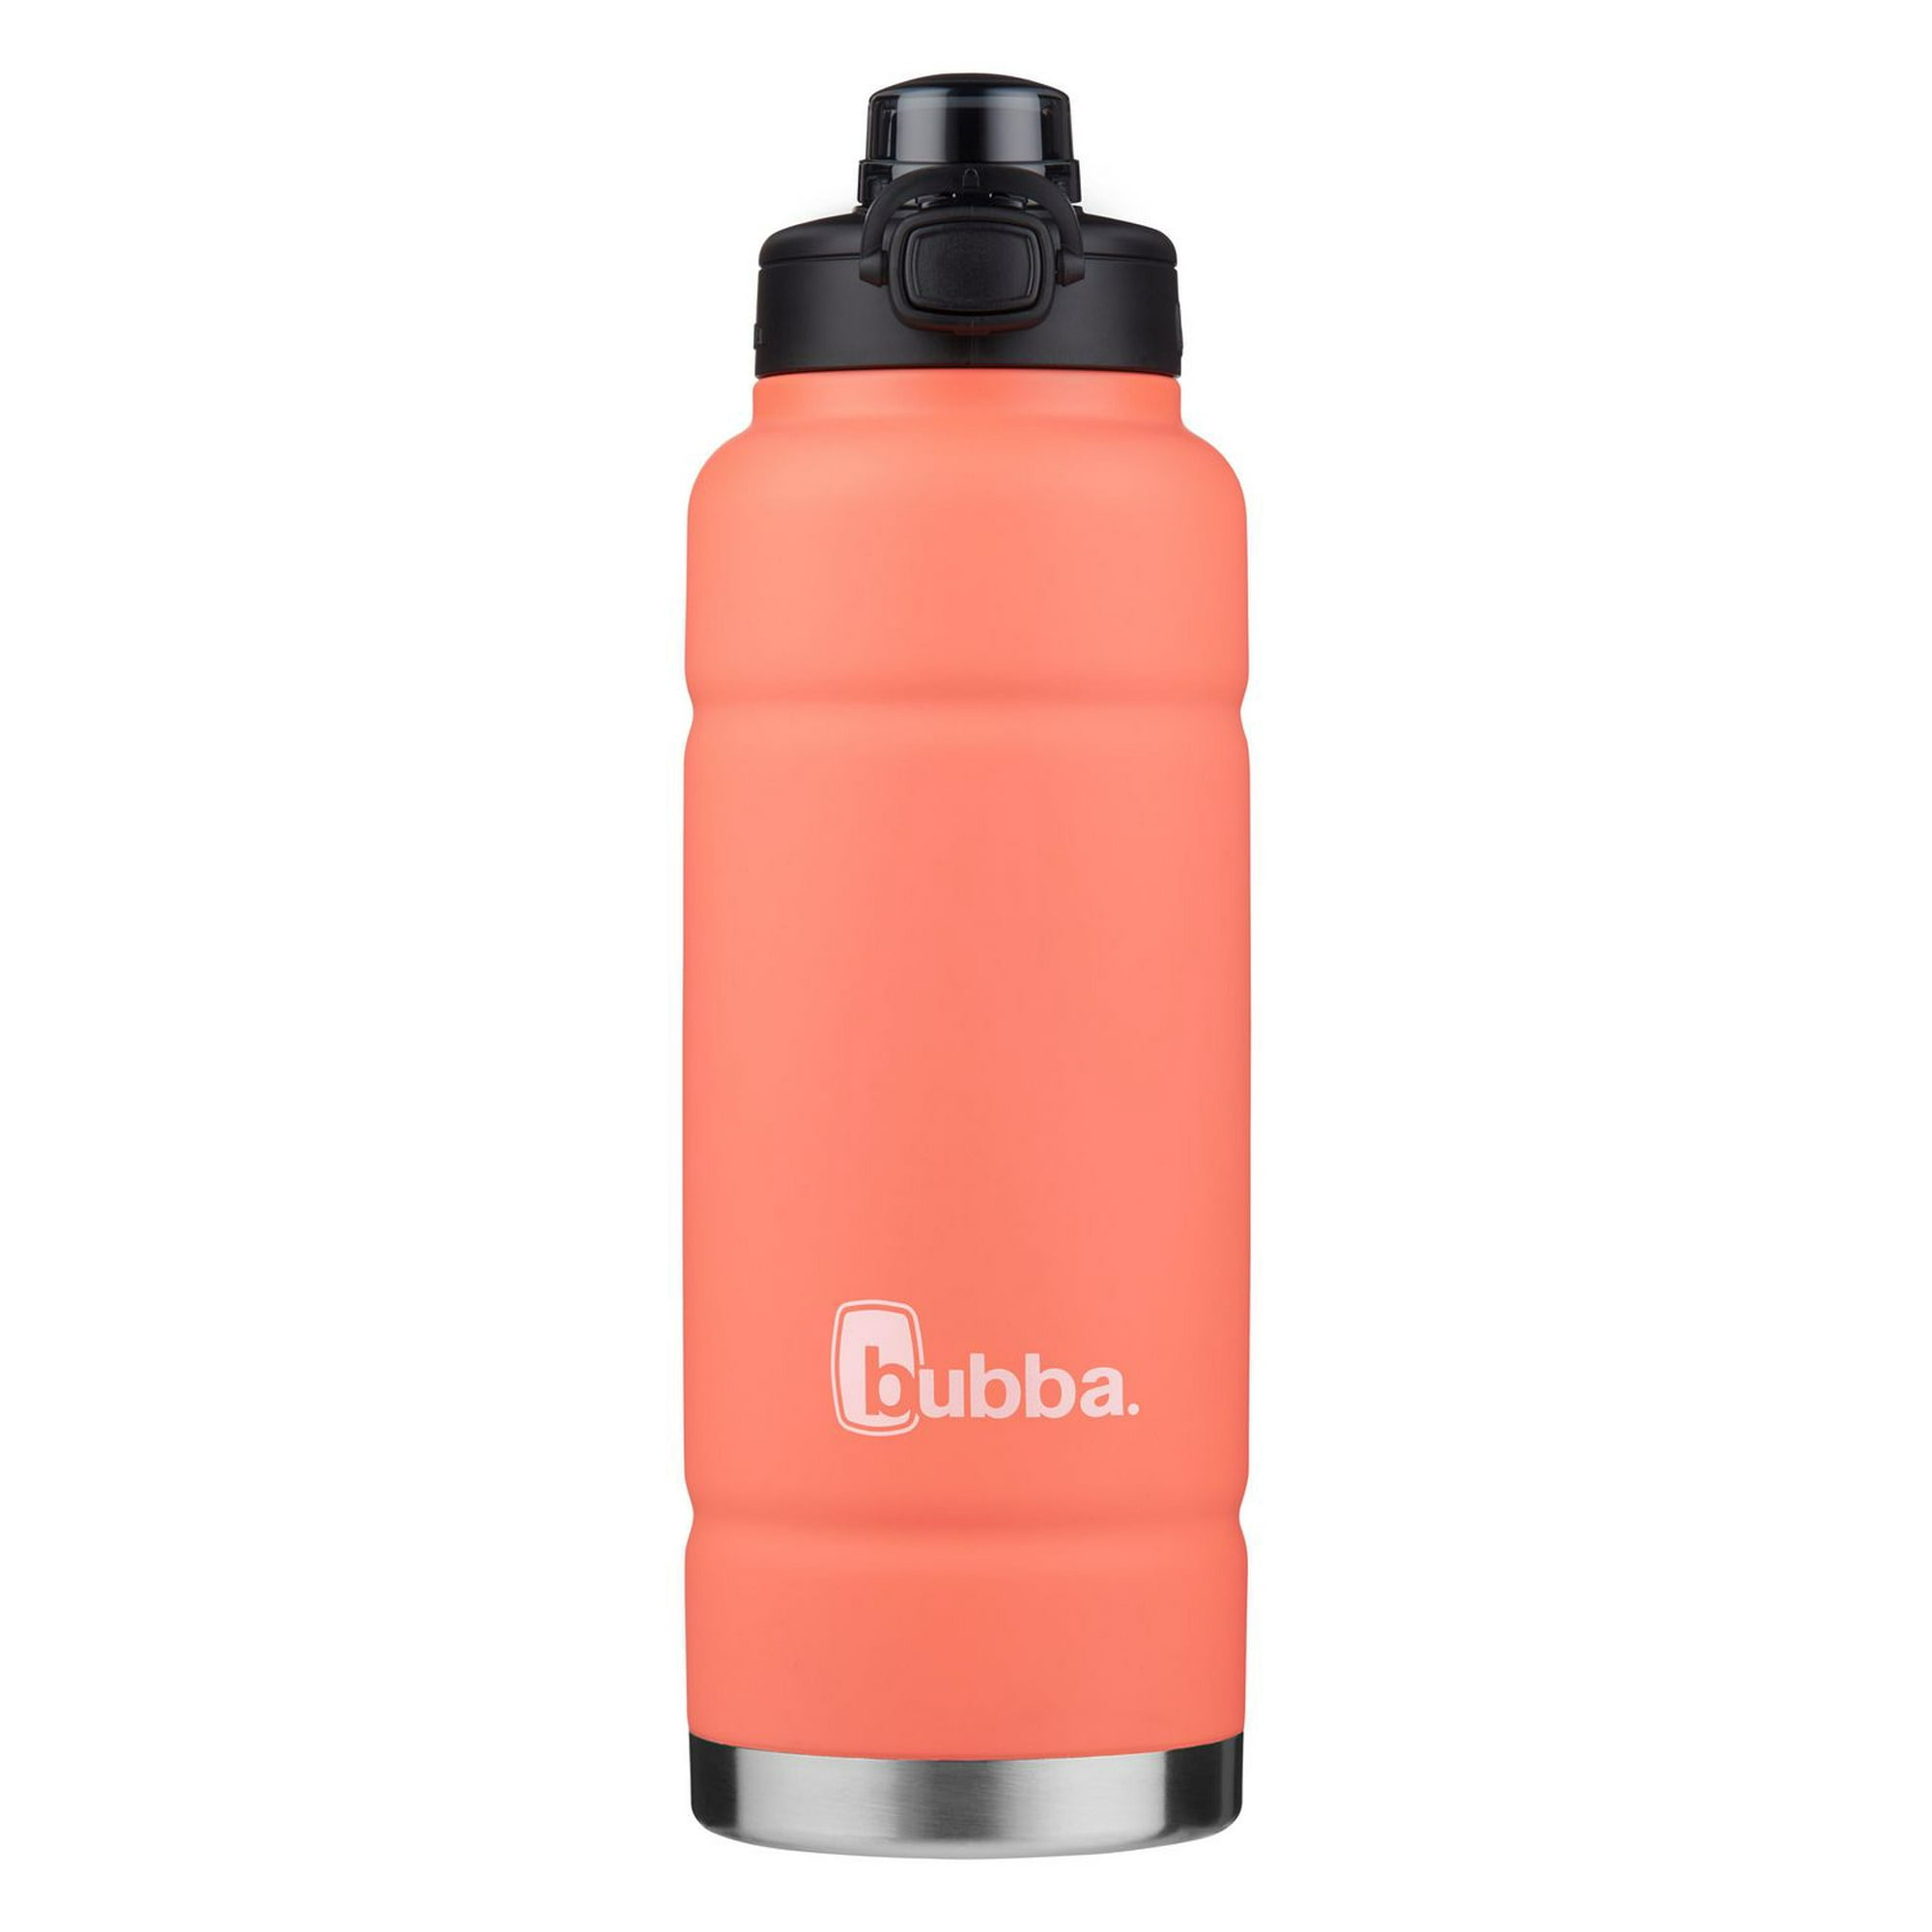 bubba Trailblazer Water Bottle with Push Button Lid, 40oz, 40oz/1.1L, BPA  Free